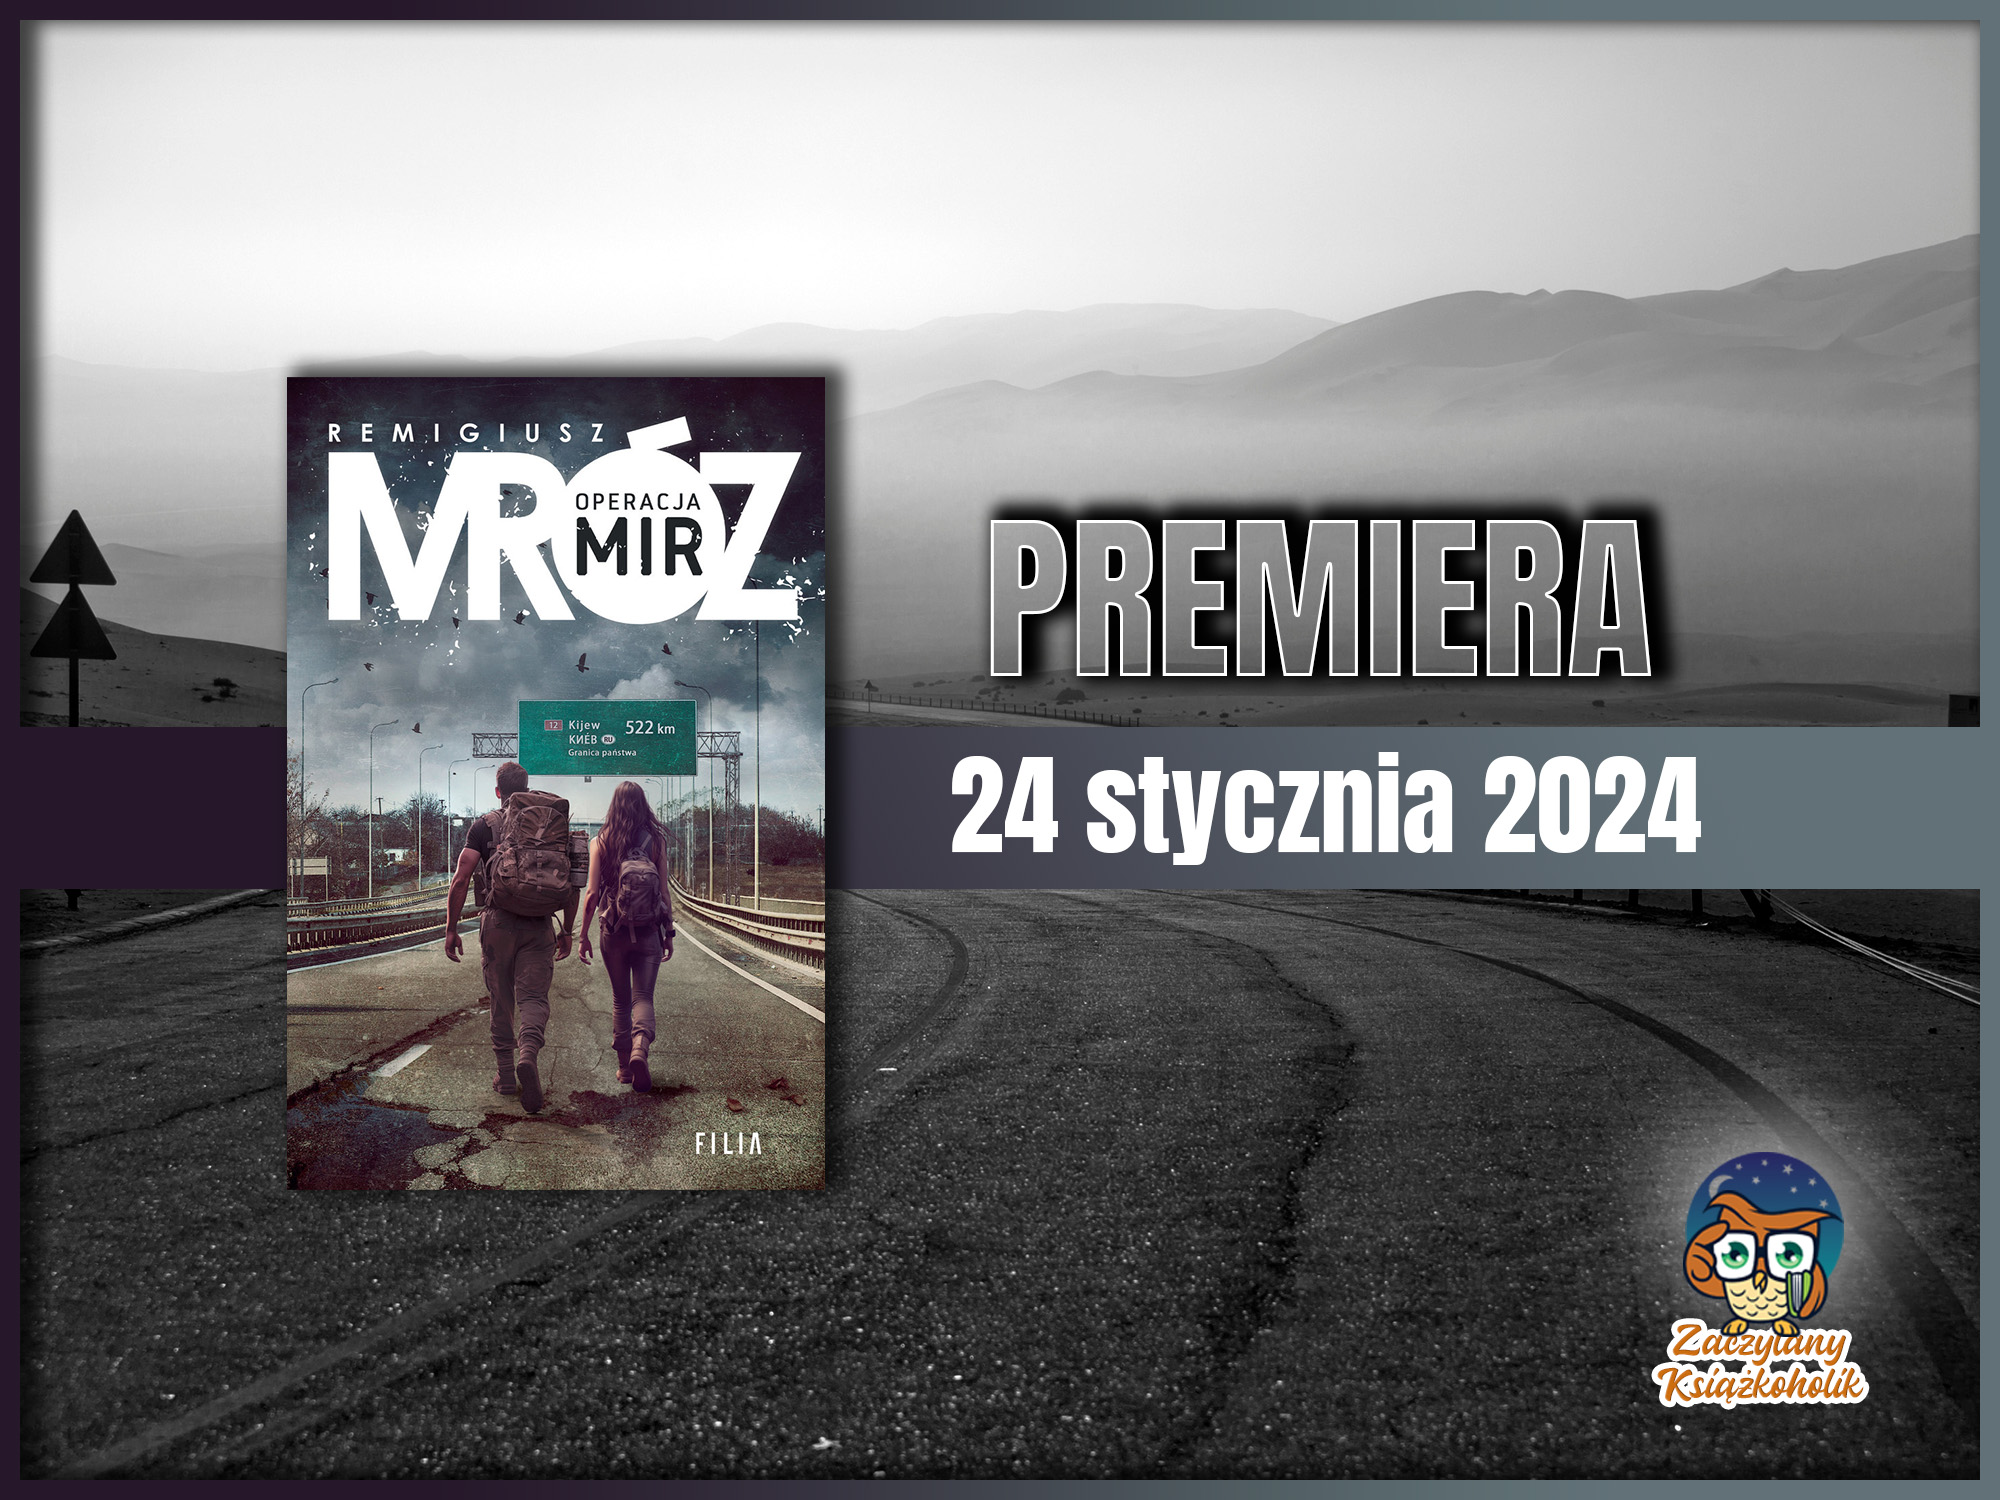 Operacja Mir - Projekt Riese (tom 2) - Remigiusz Mróz - zaczytanyksiazkoholik.pl